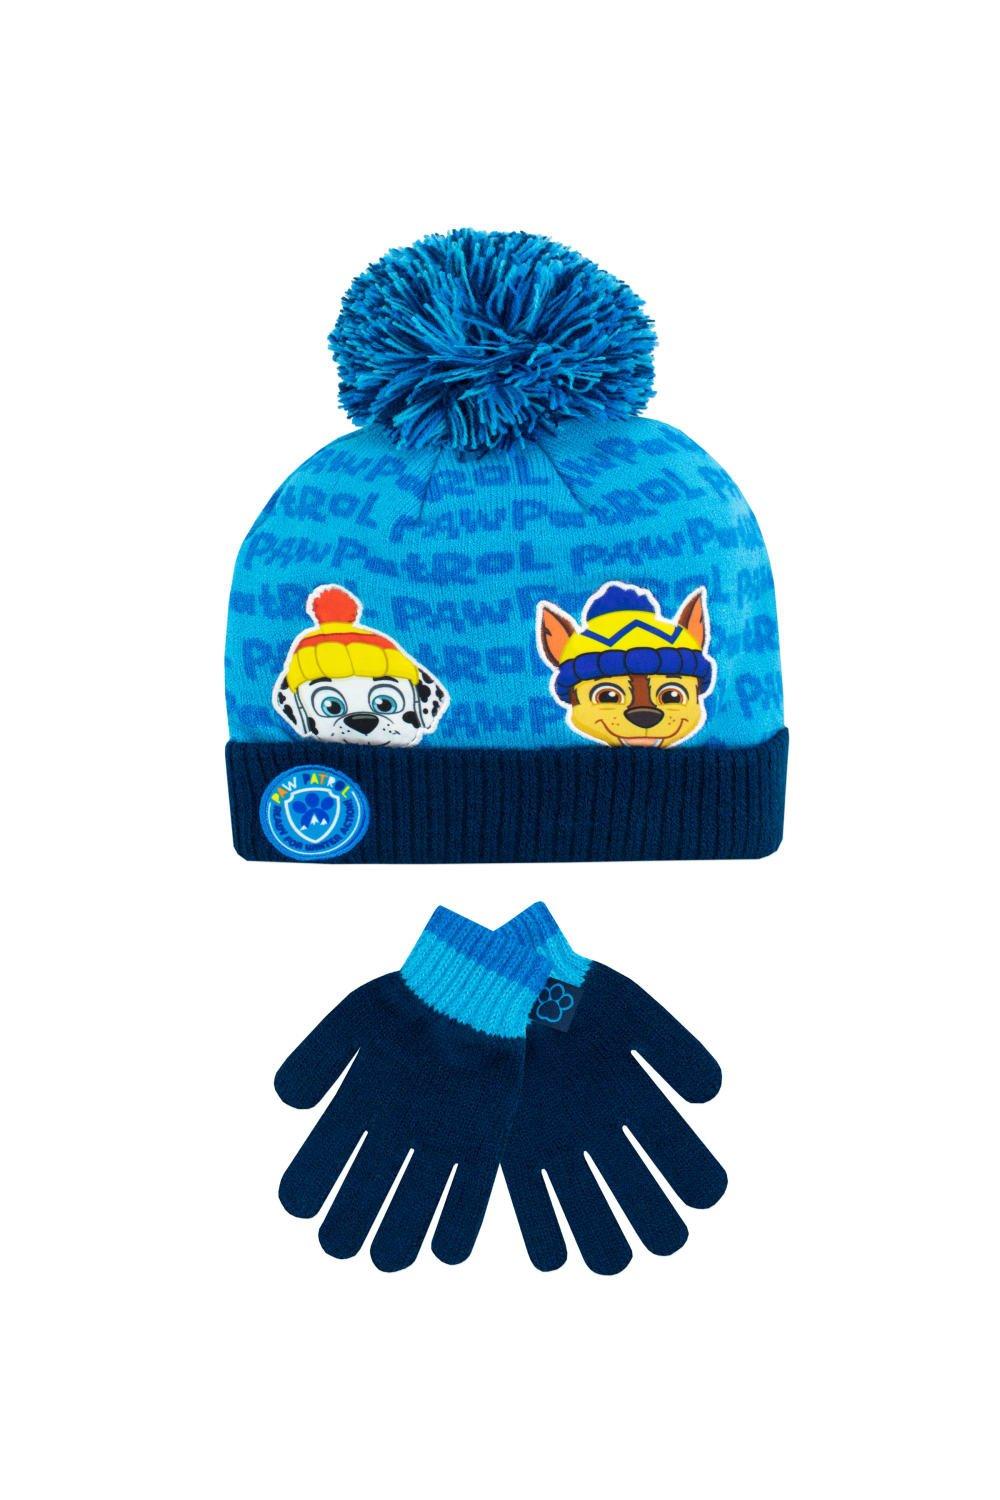 шапка modniki для мальчиков и девочек р56 темно синяя Детский комплект шапки и перчаток Paw Patrol, синий